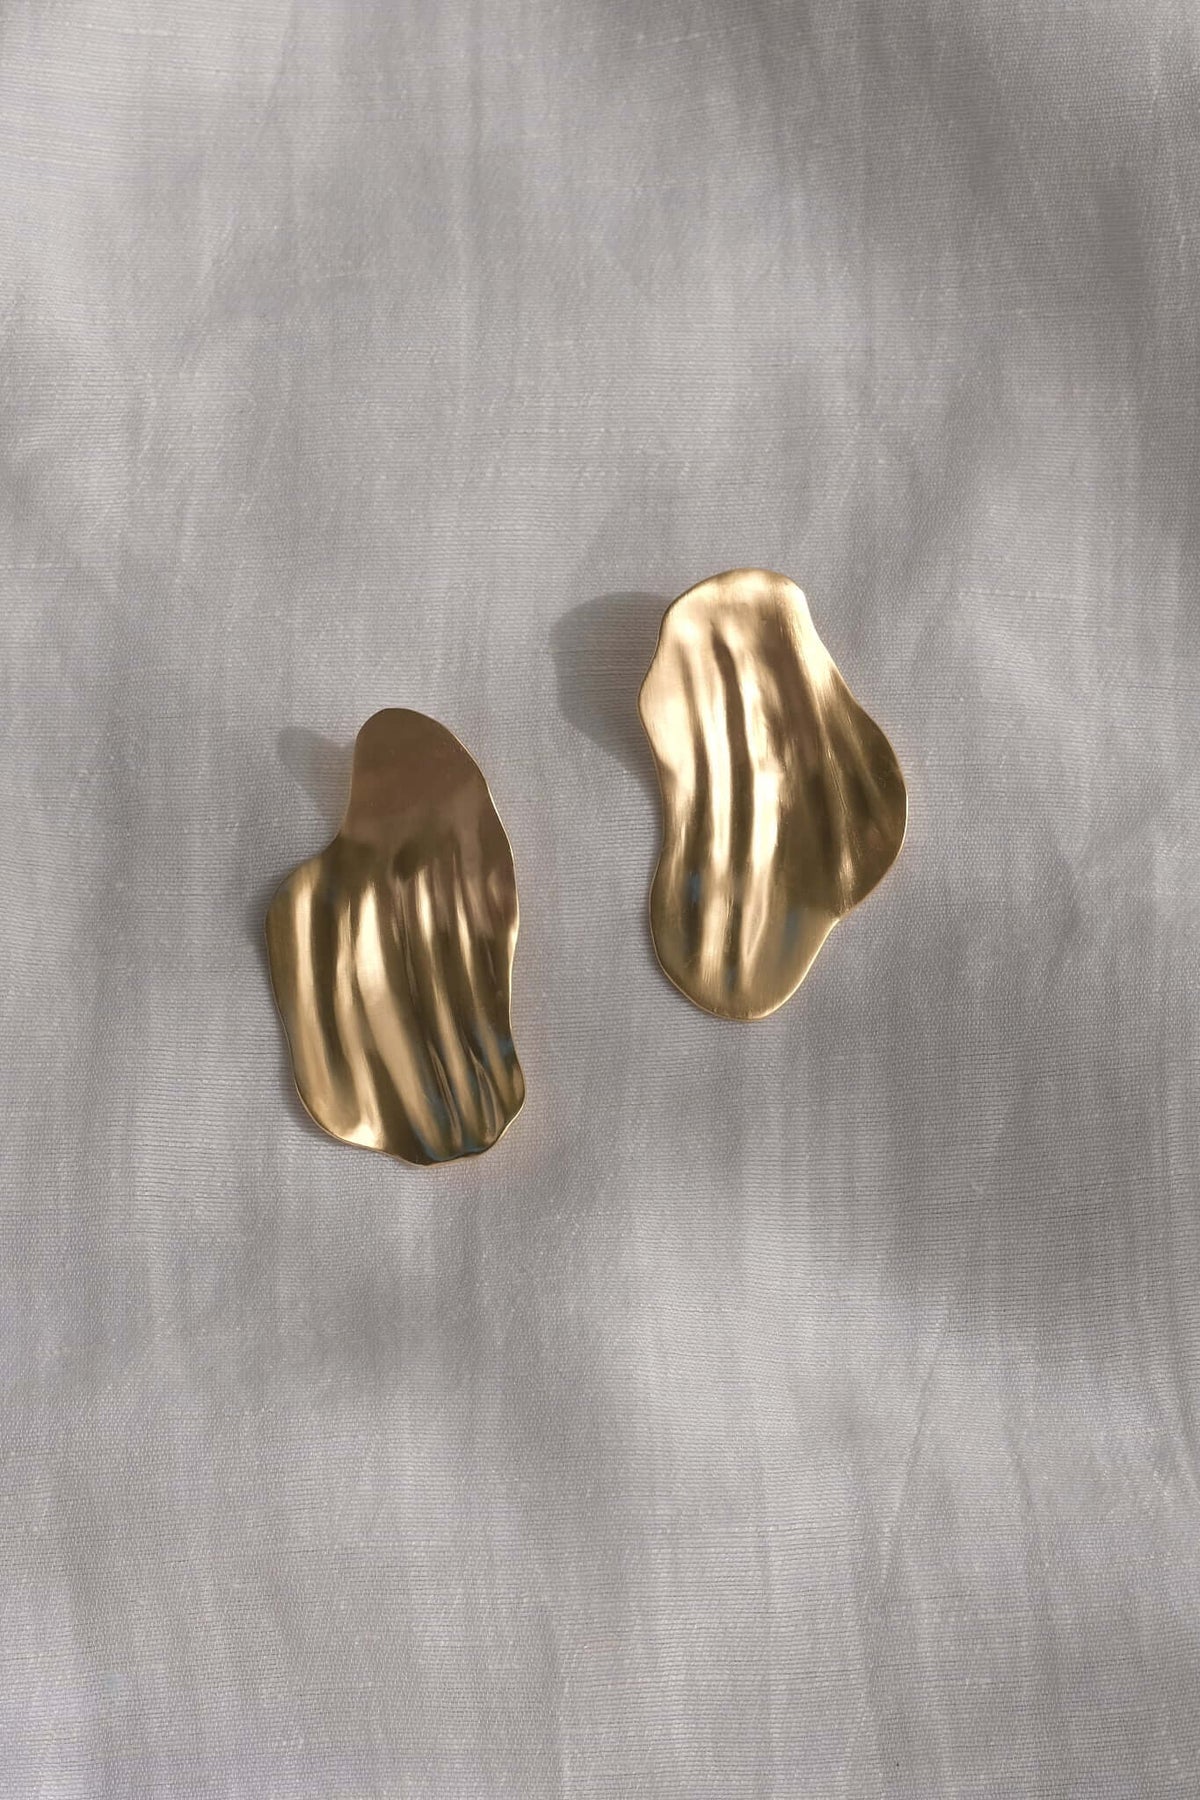 AJUN earrings 18k gold